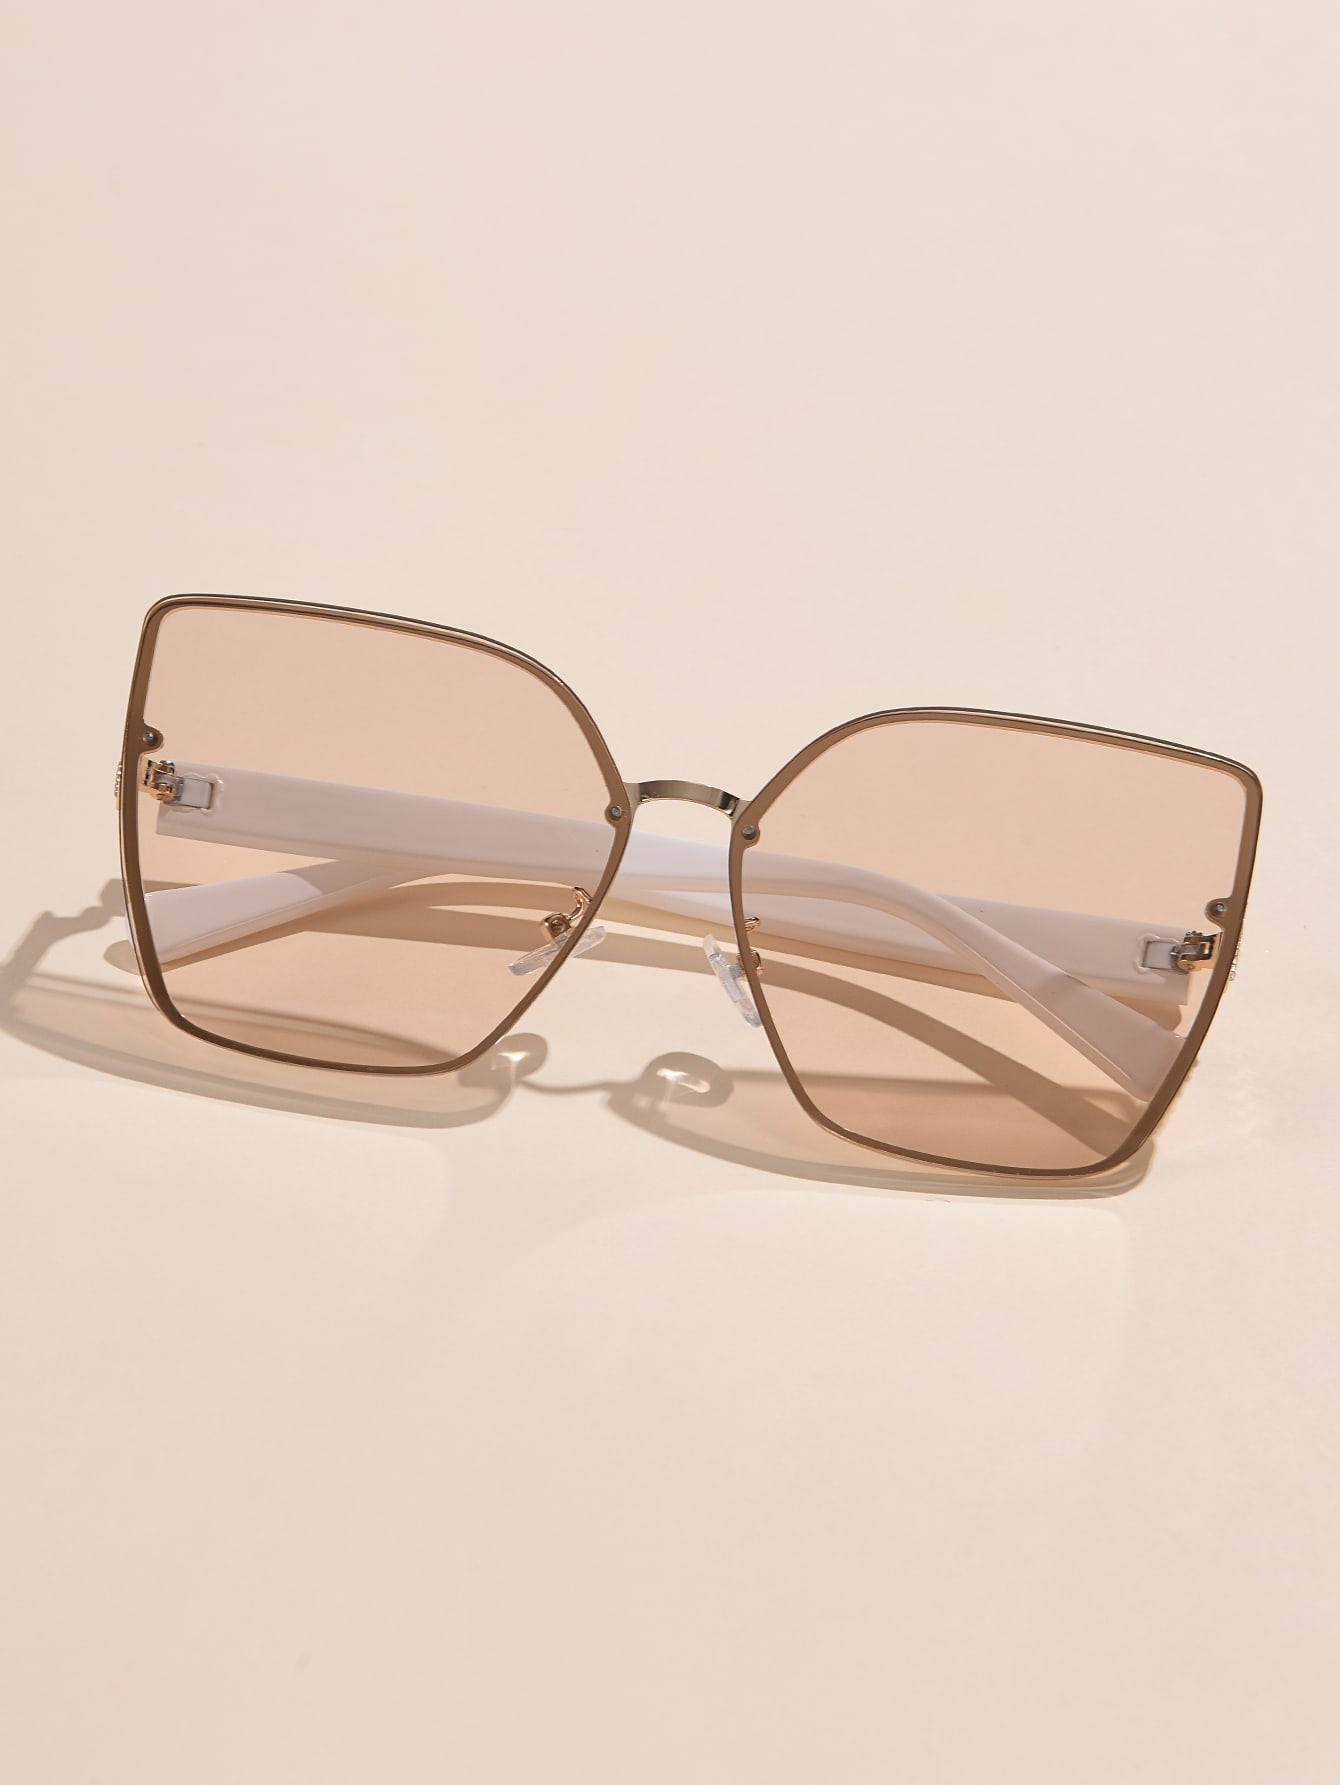 1 шт. упакованные модные солнцезащитные очки в металлической оправе с бриллиантами и элегантным футляром для очков